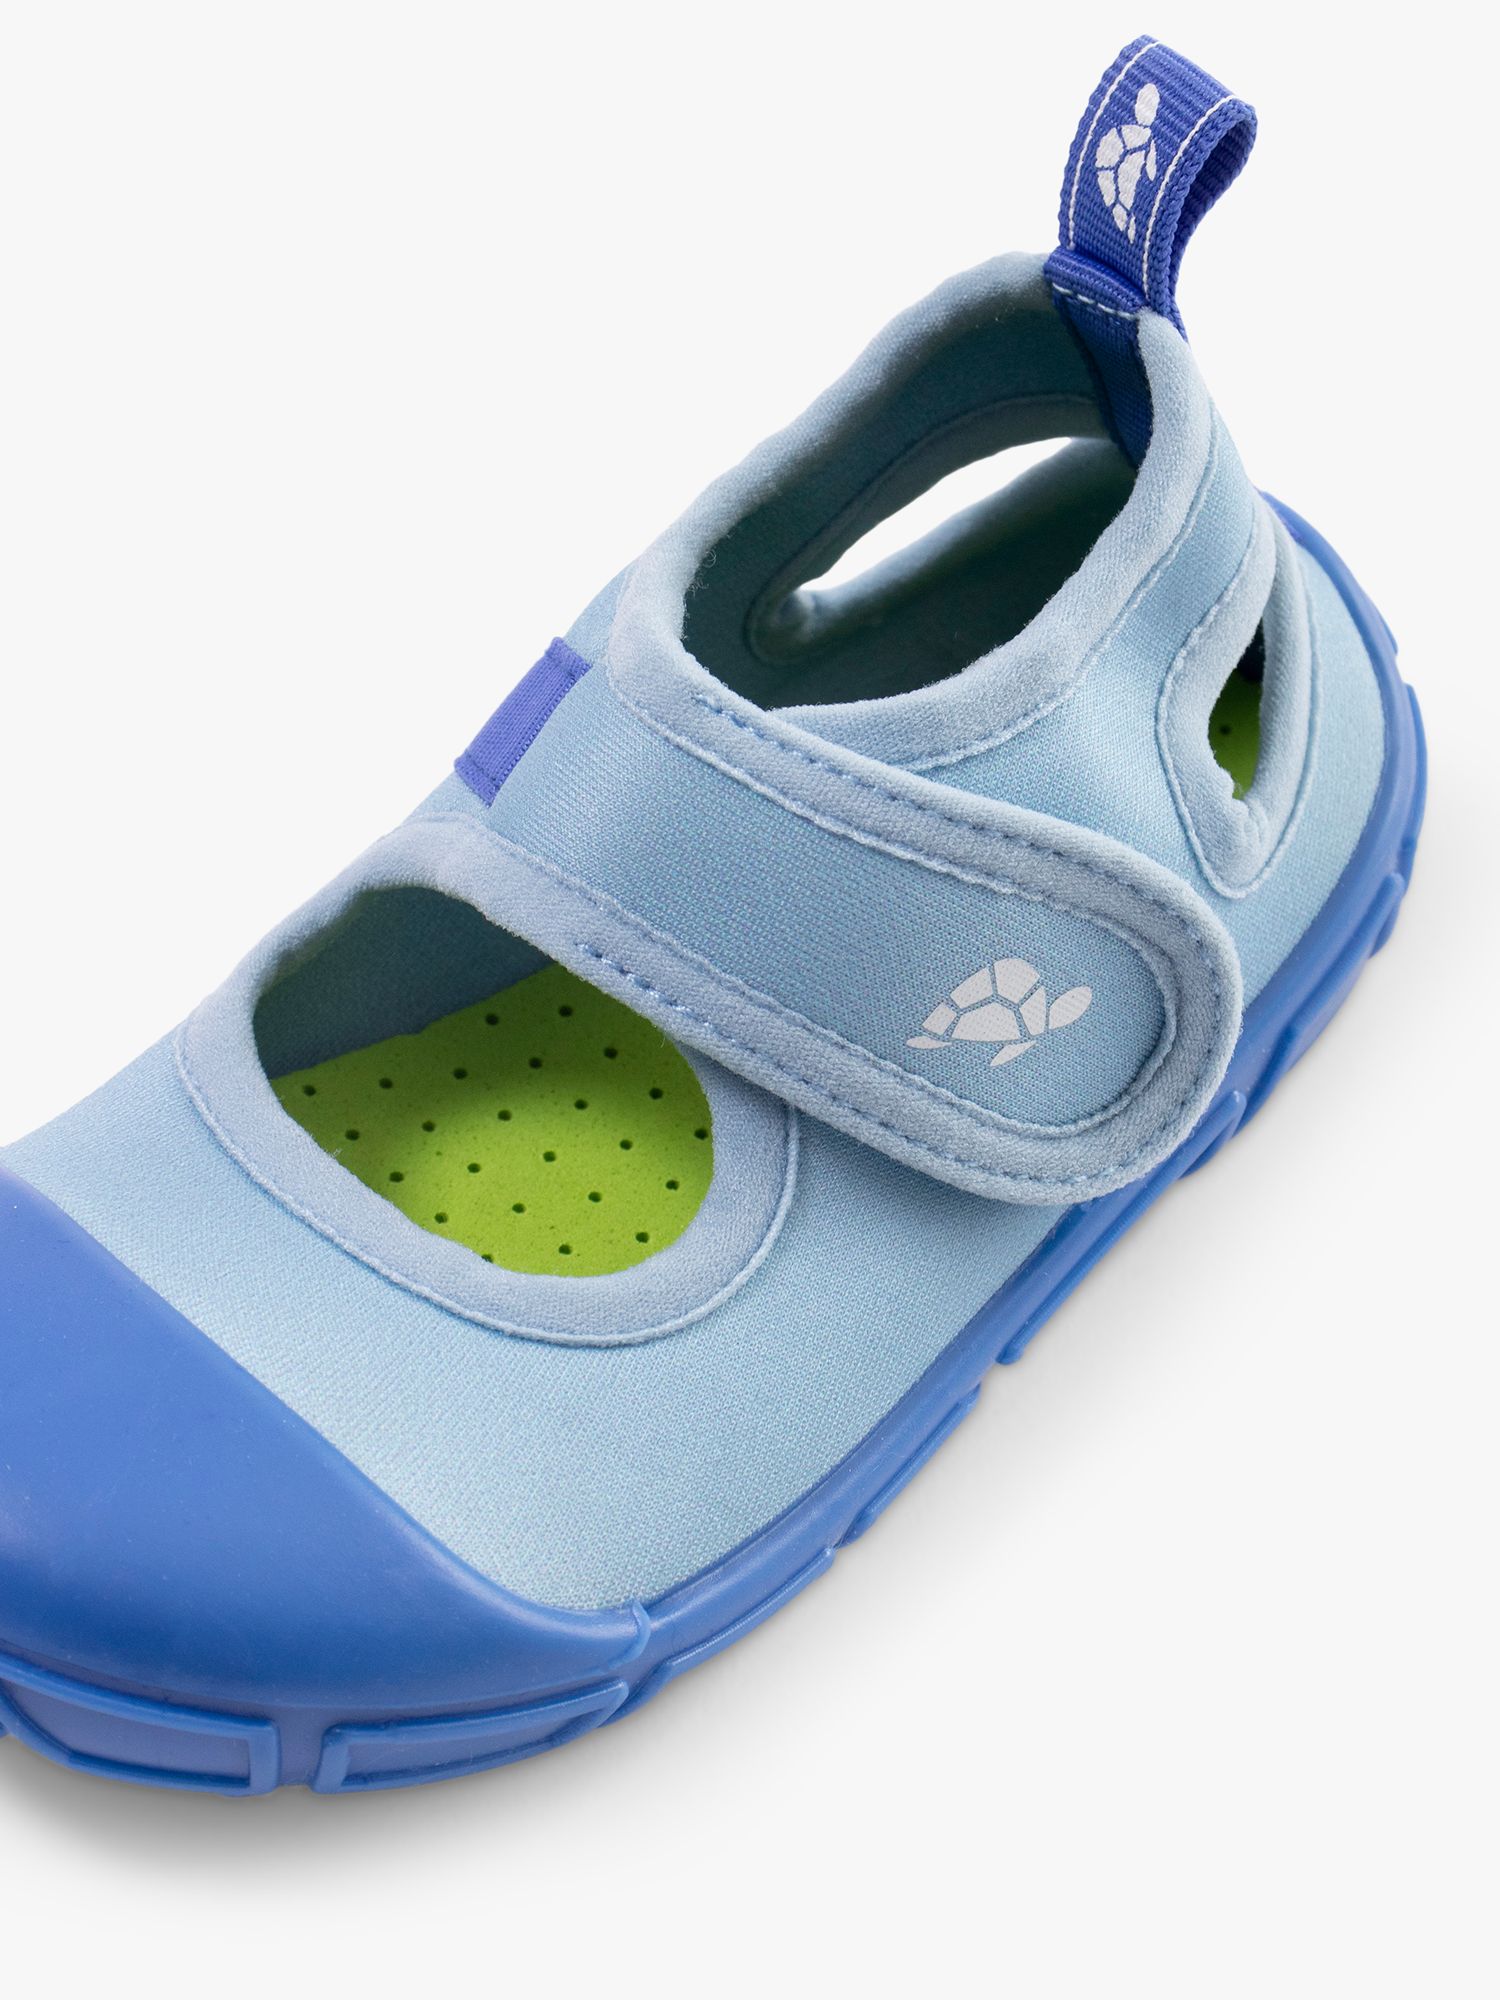 Turtl Kids' Sports Sandal, Blue, 2-3